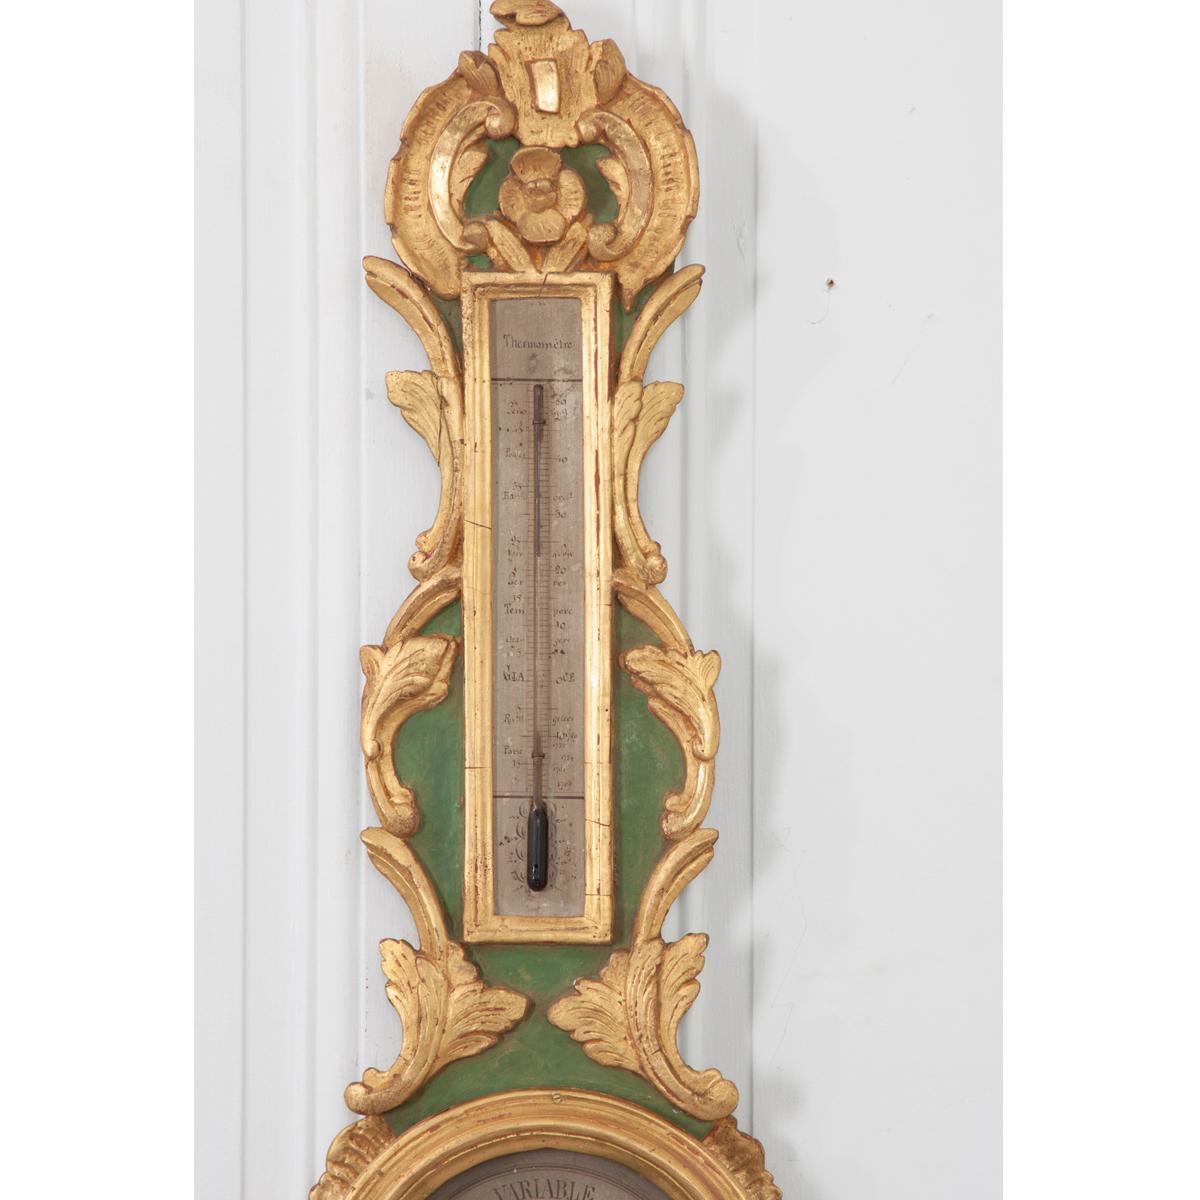 Französisch 19. gemalt und vergoldet Barometer und Thermometer. Es ist ein erkennbares wissenschaftliches Instrument in Form eines Banjos mit allen geschnitzten Details in Gold vergoldet und der Hintergrund ist salbeigrün bemalt. Das runde